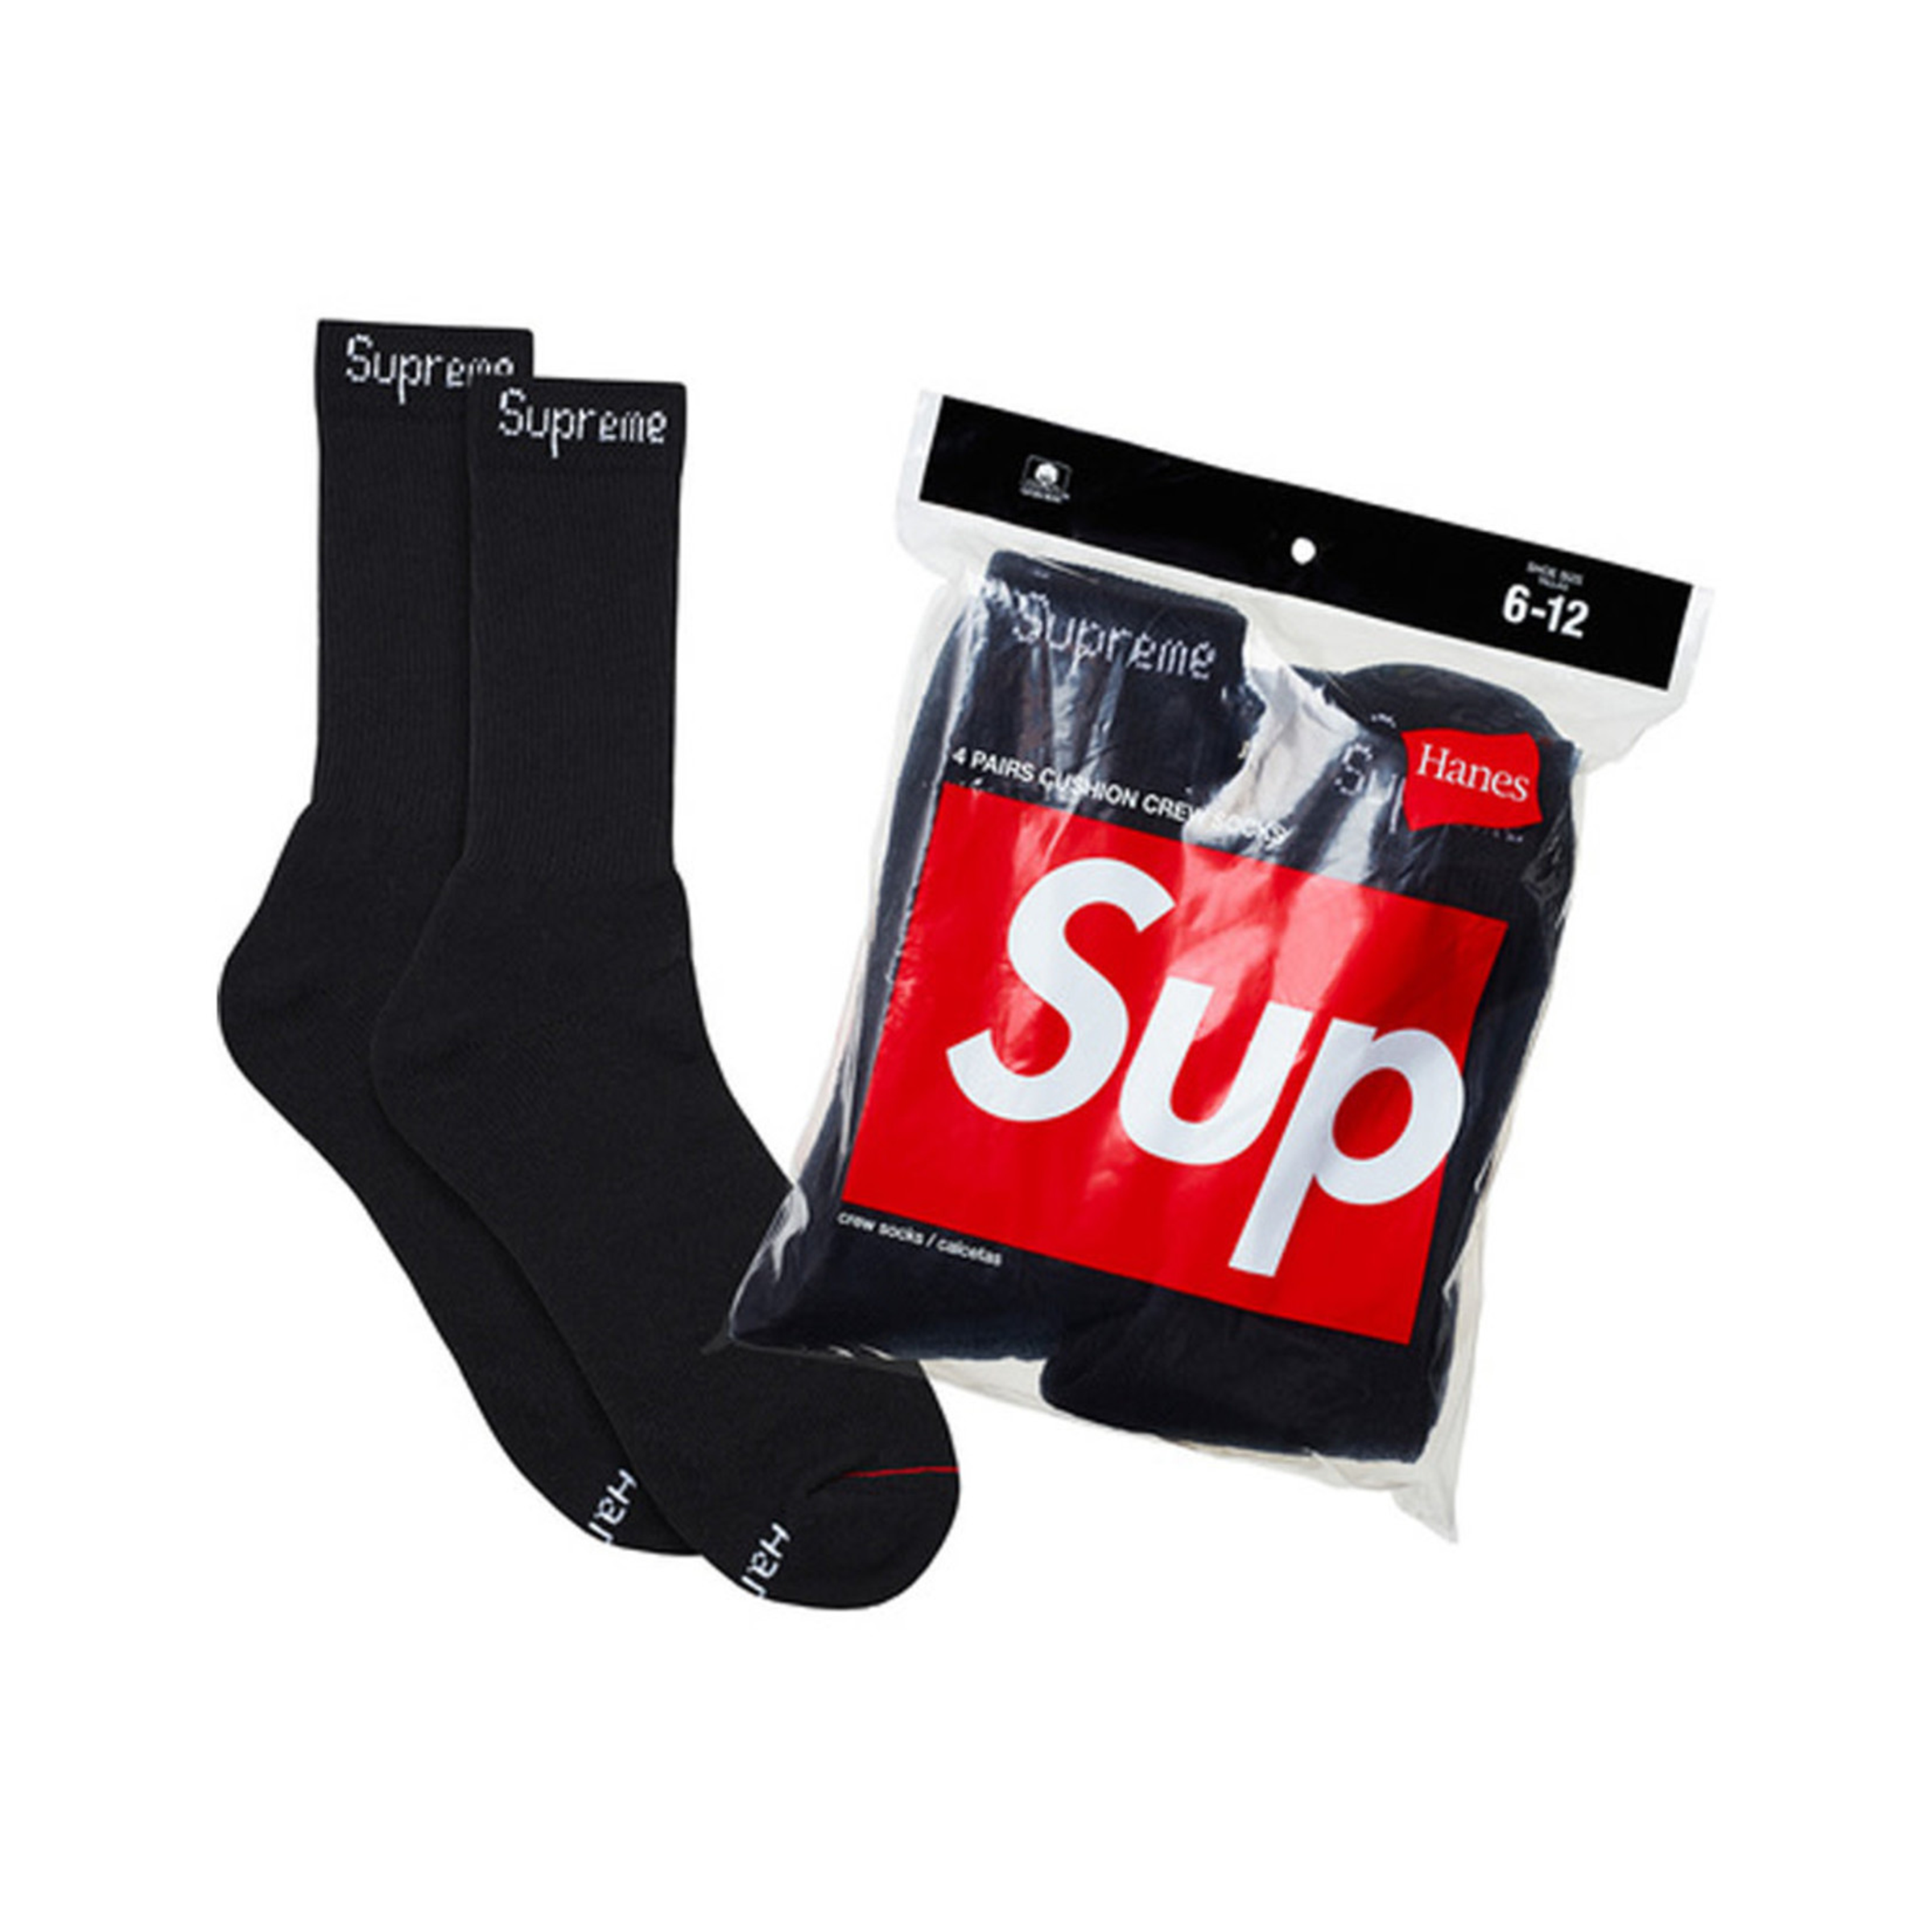 Supreme x Hanes - White Socks